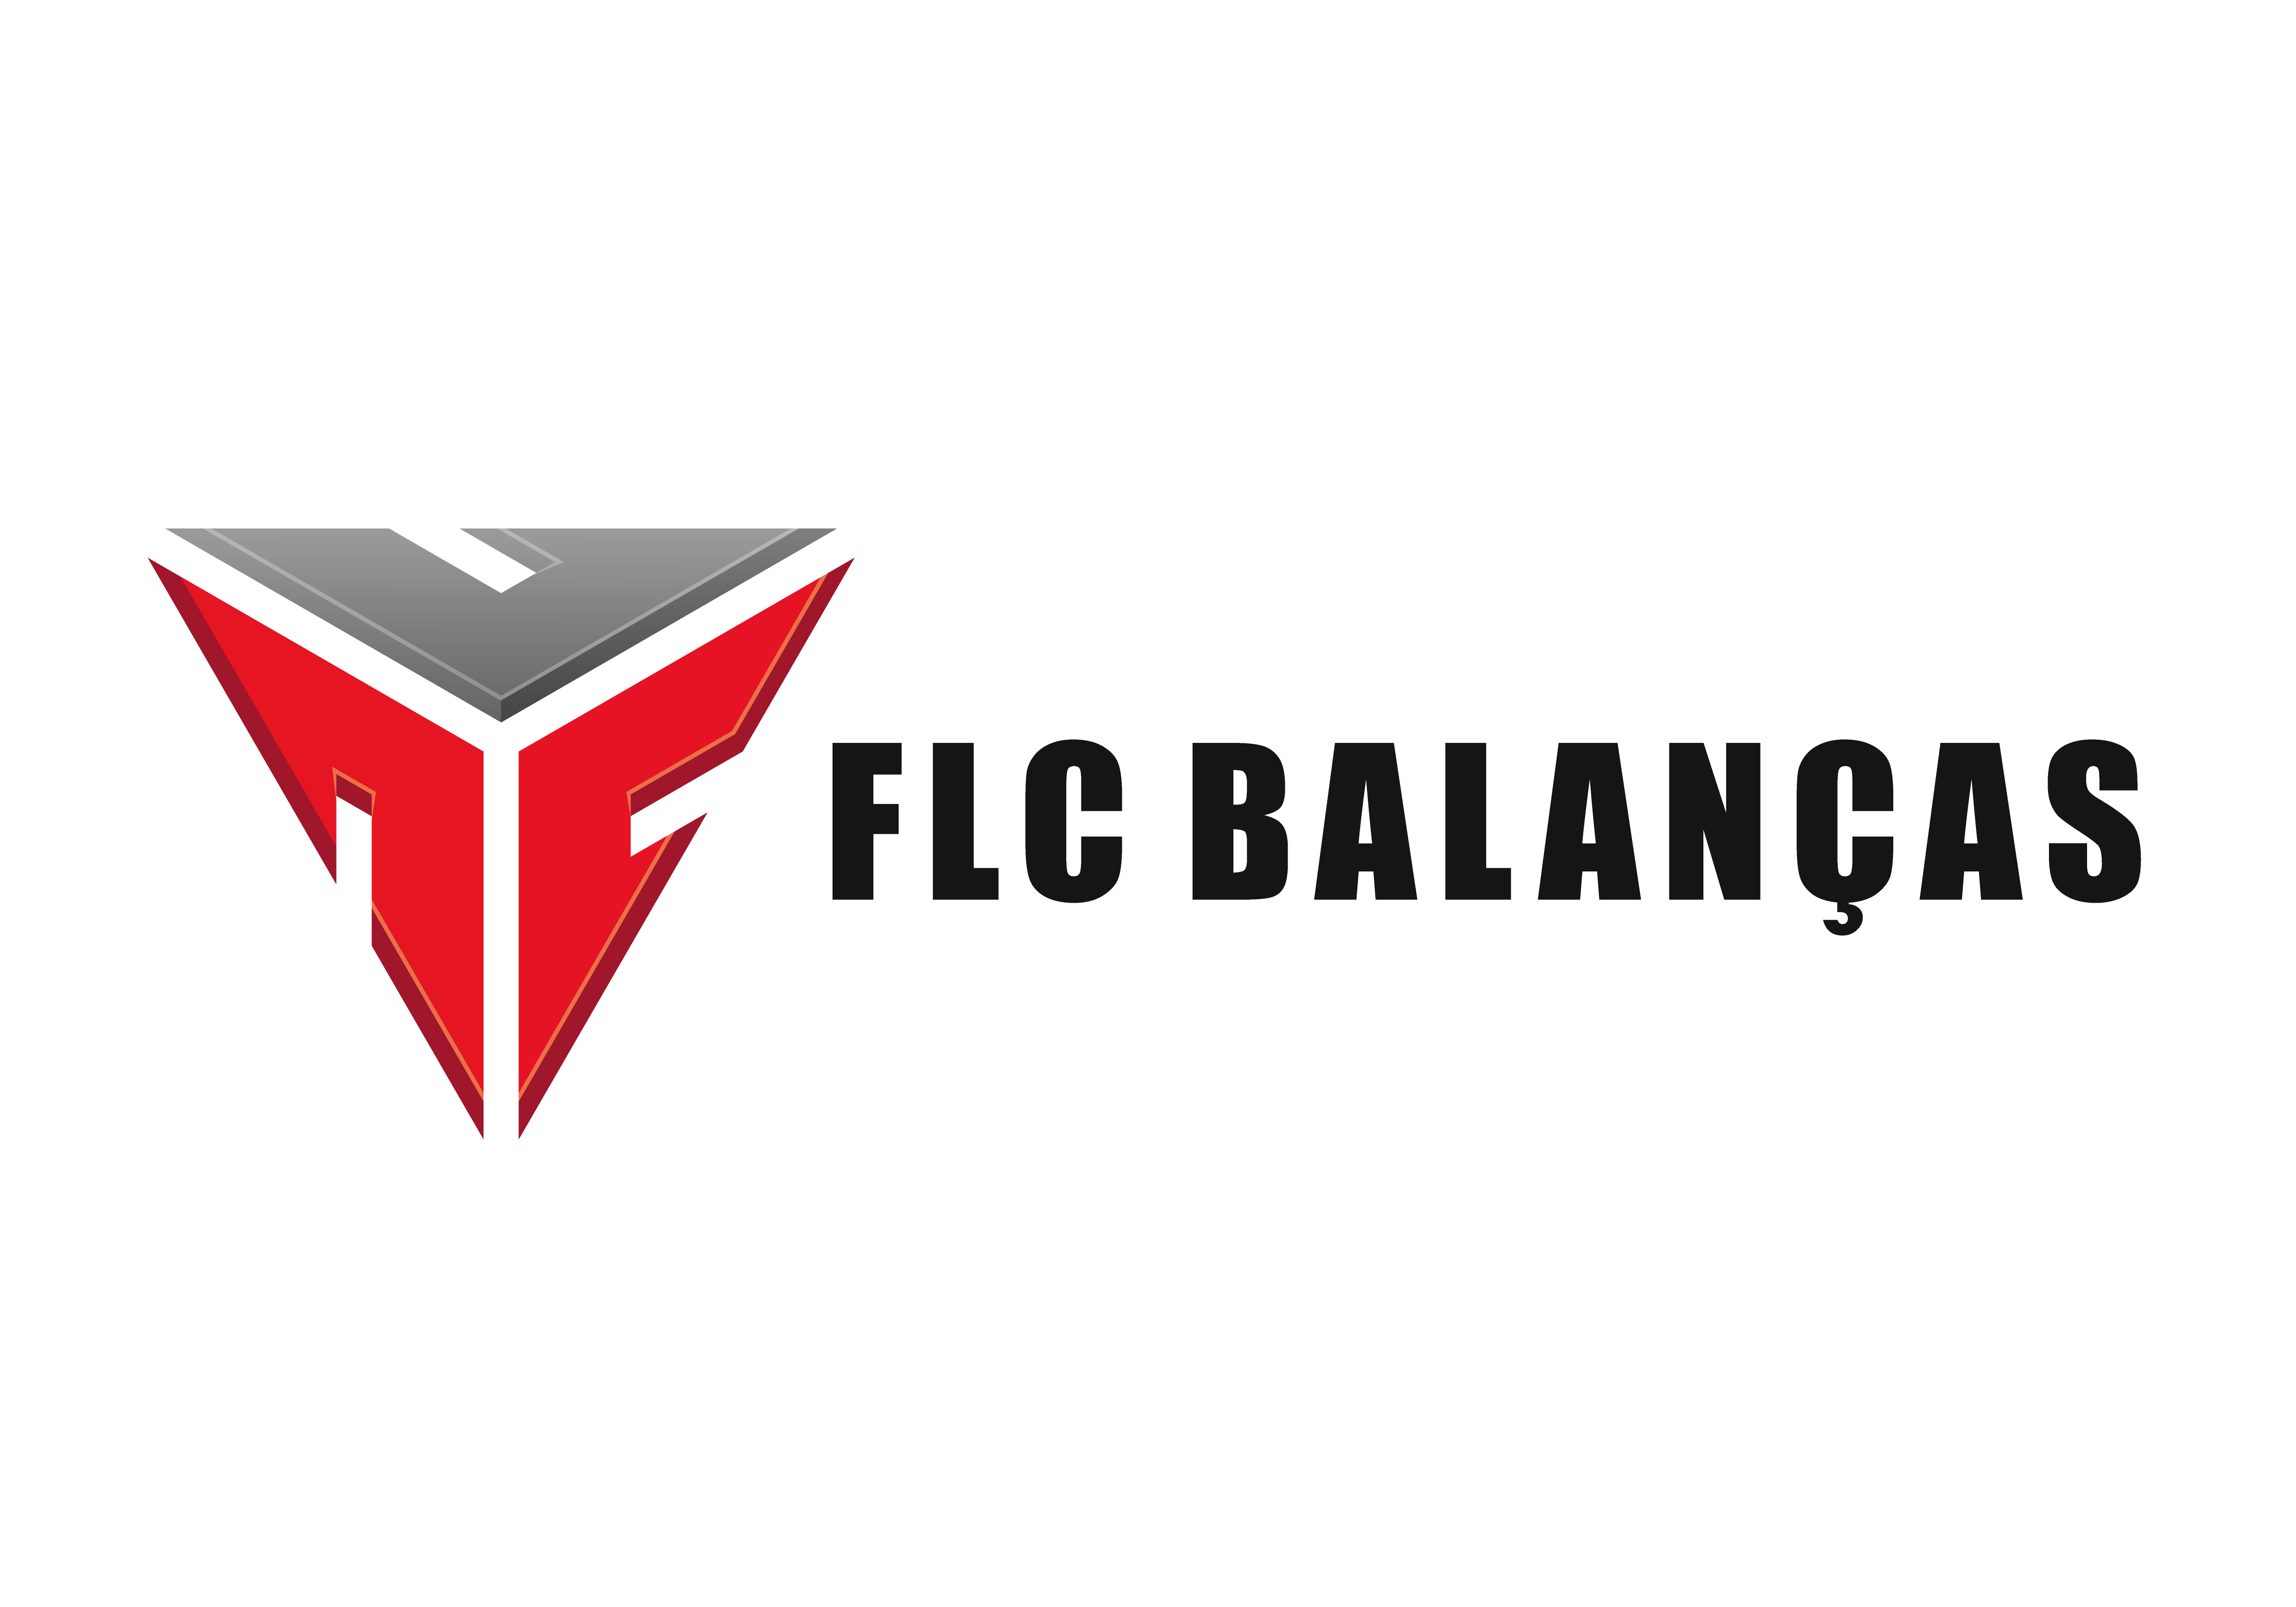 FLC Balanças